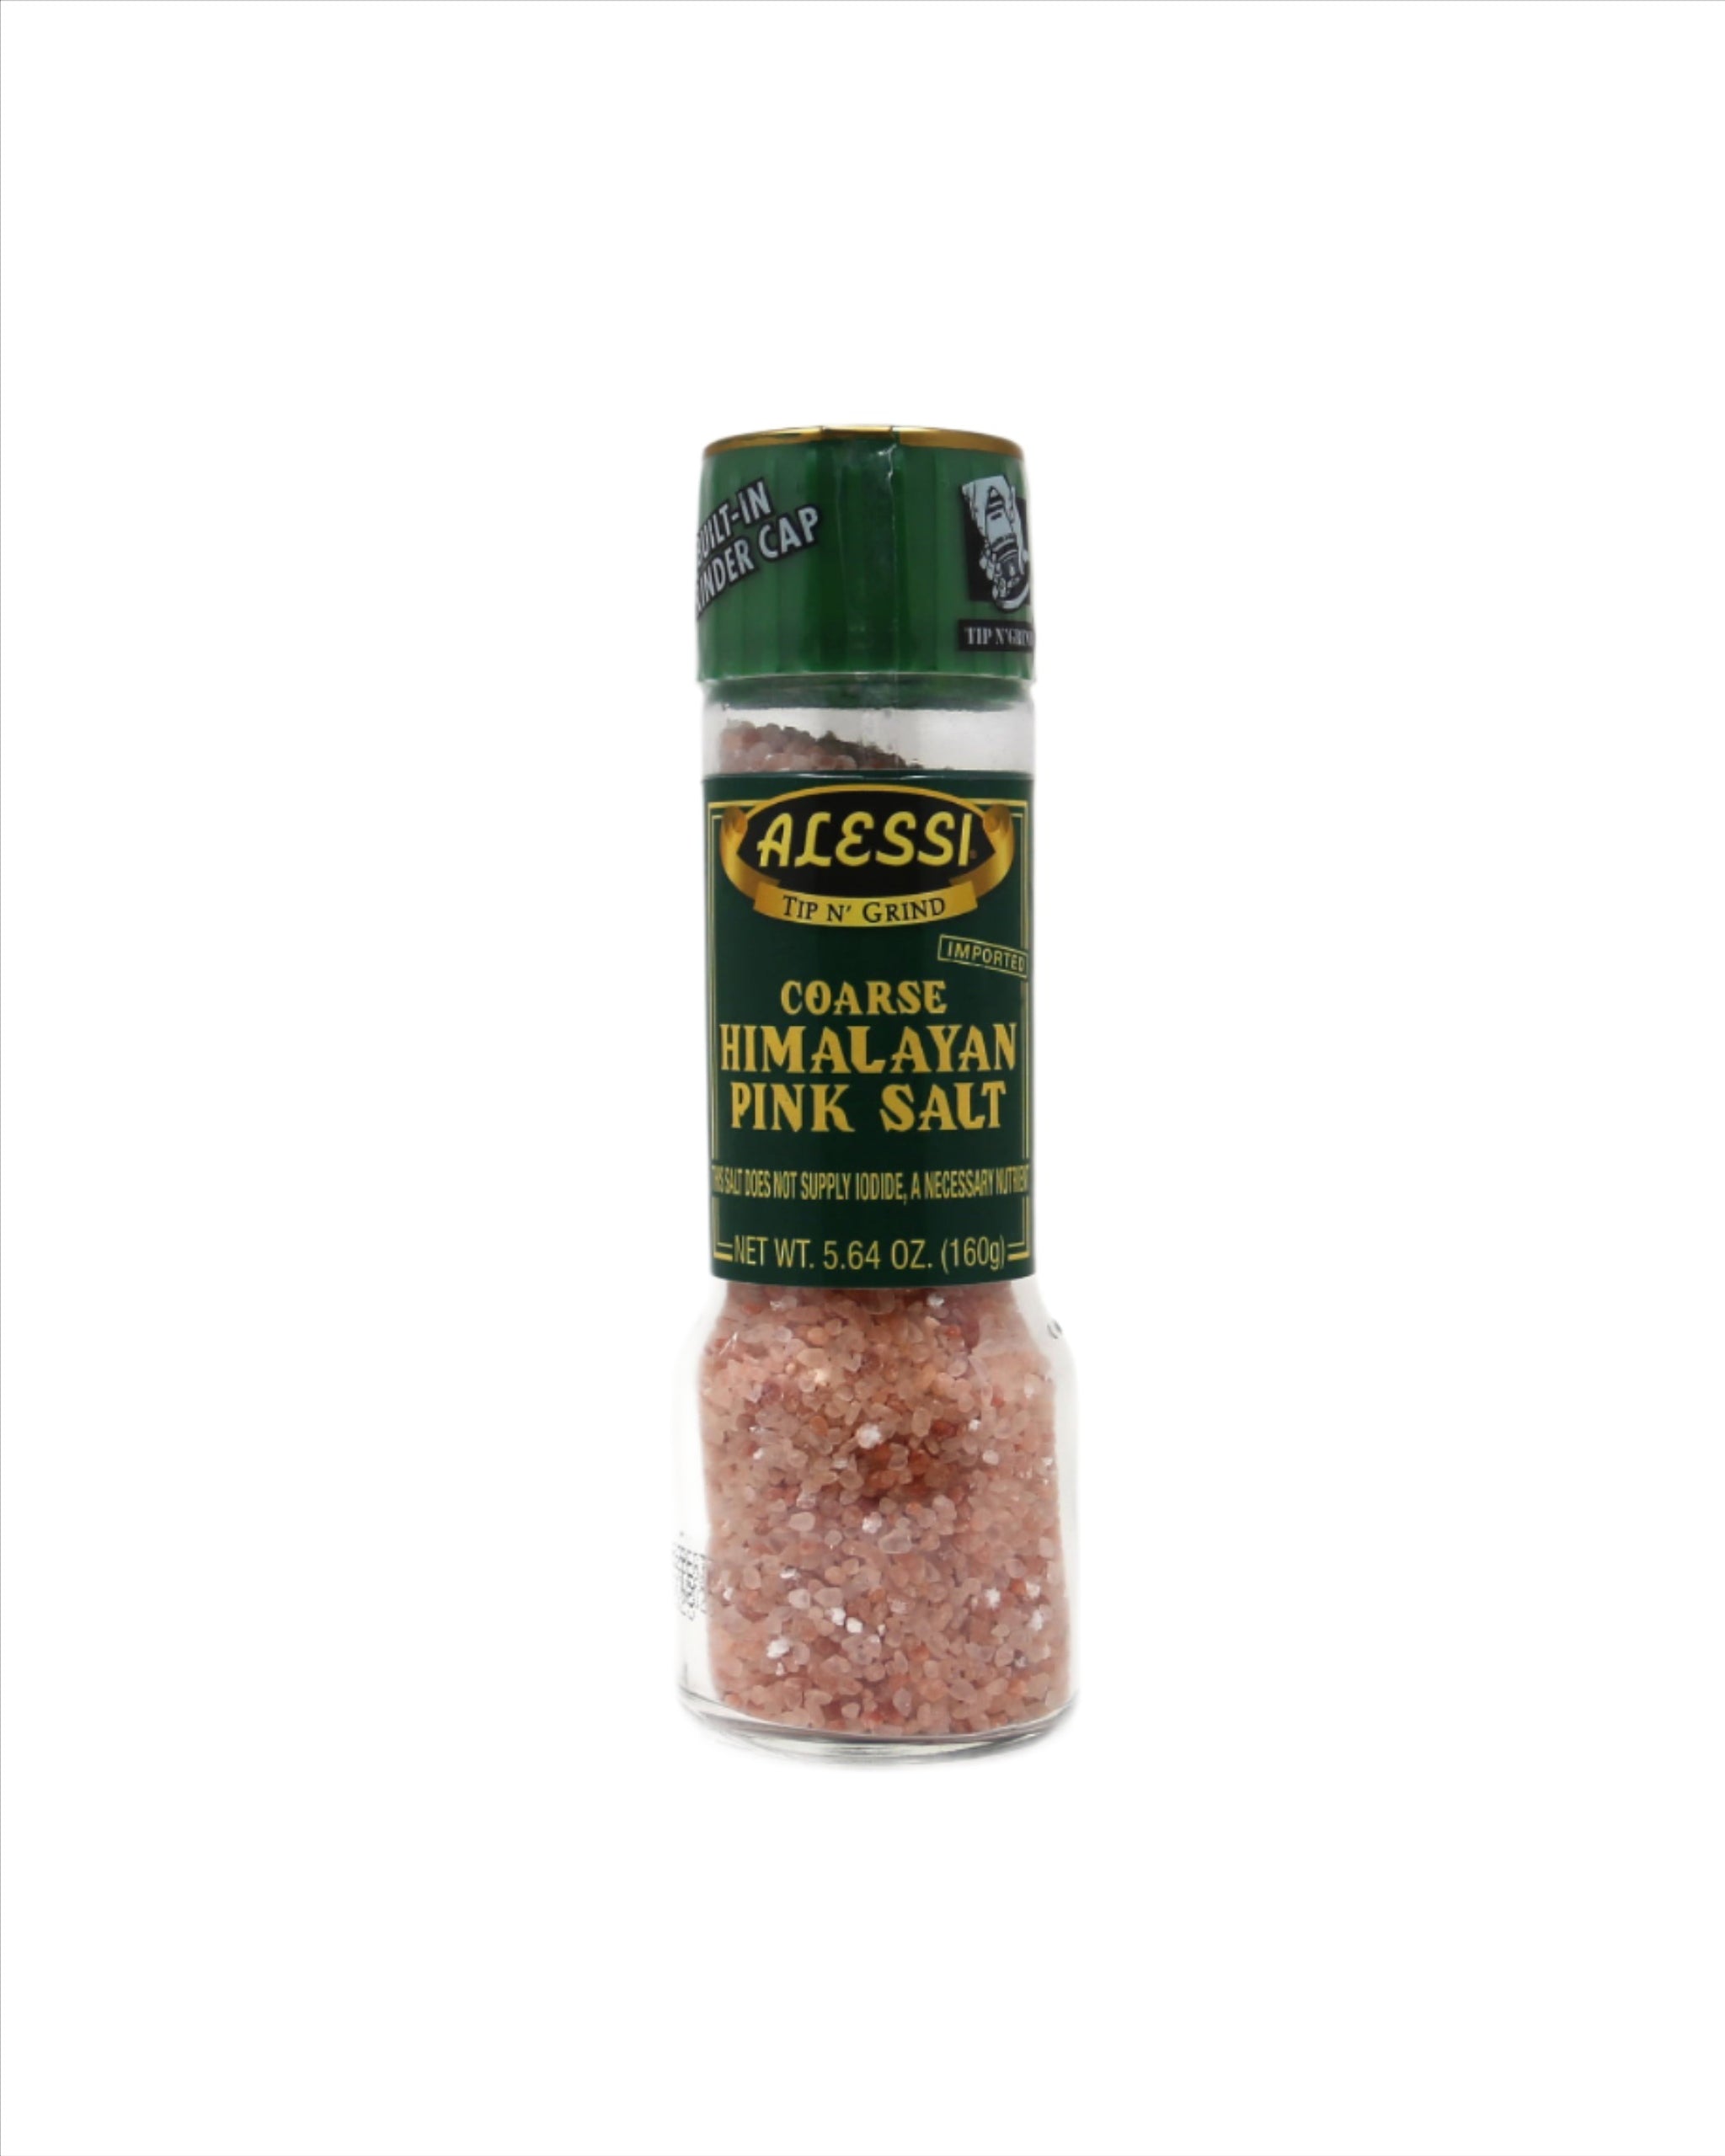 http://www.oliveoiletc.com/cdn/shop/products/alessi-coarse-himalayan-pink-salt.jpg?v=1628637829&width=2048